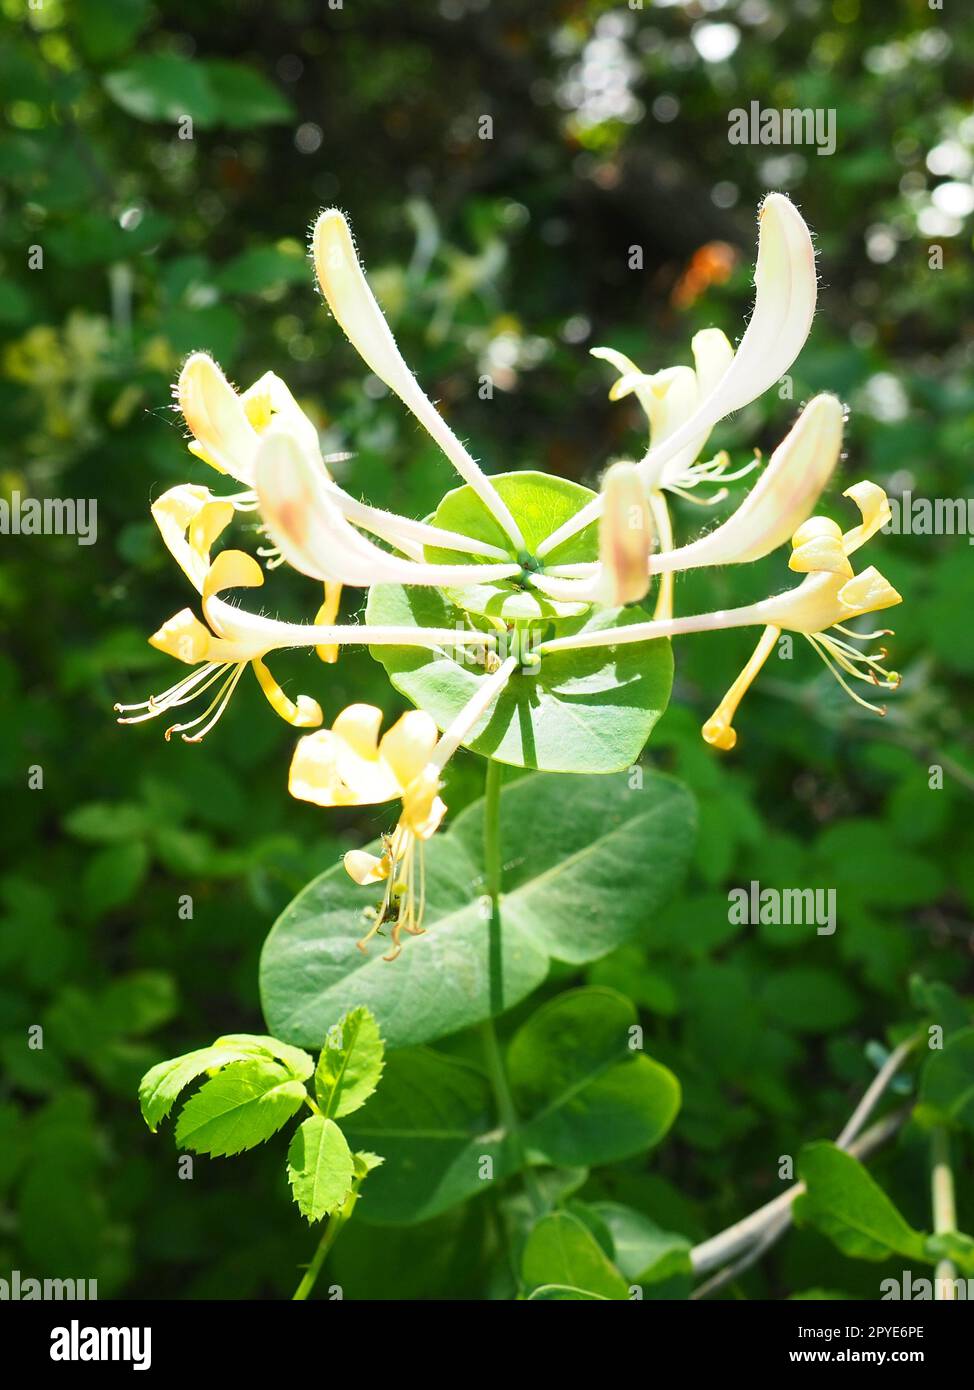 La madreselva florece en el jardín. Flores blancas y amarillas de Lonicera Caprifolium contra de hojas verdes. Floricultura y horticultura. Arcadas de arbustos o enredaderas en la familia Caprifoliaceae. Foto de stock